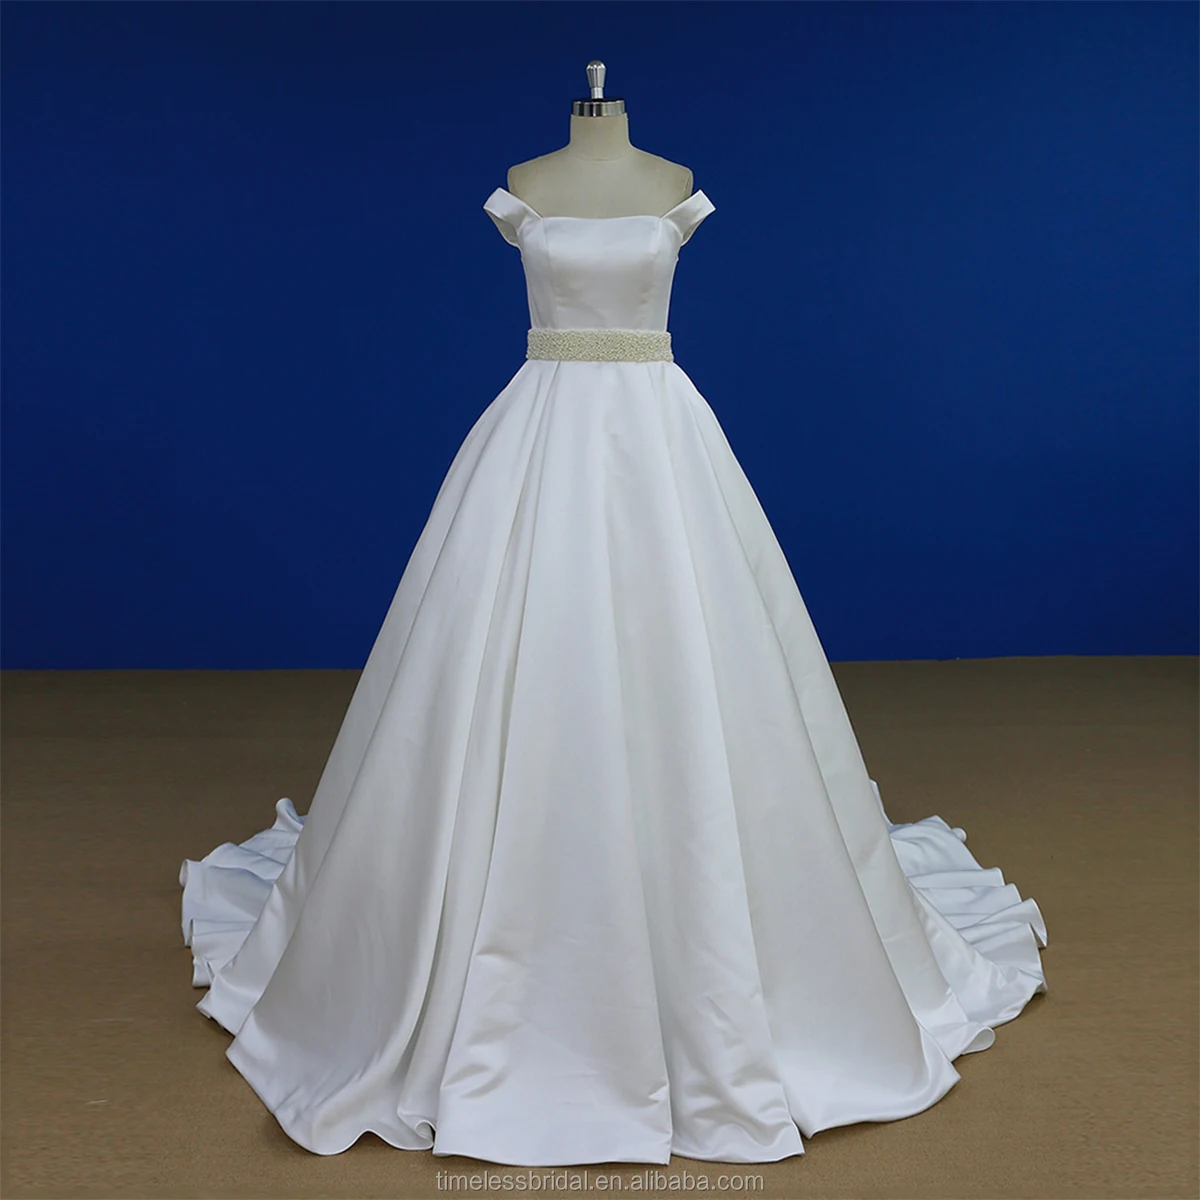 ZHENM Crystal Wedding Belt Bridal Belt for Wedding Gown, Wedding Belt for Bride  Dress,Bridal sash with Rhinestones